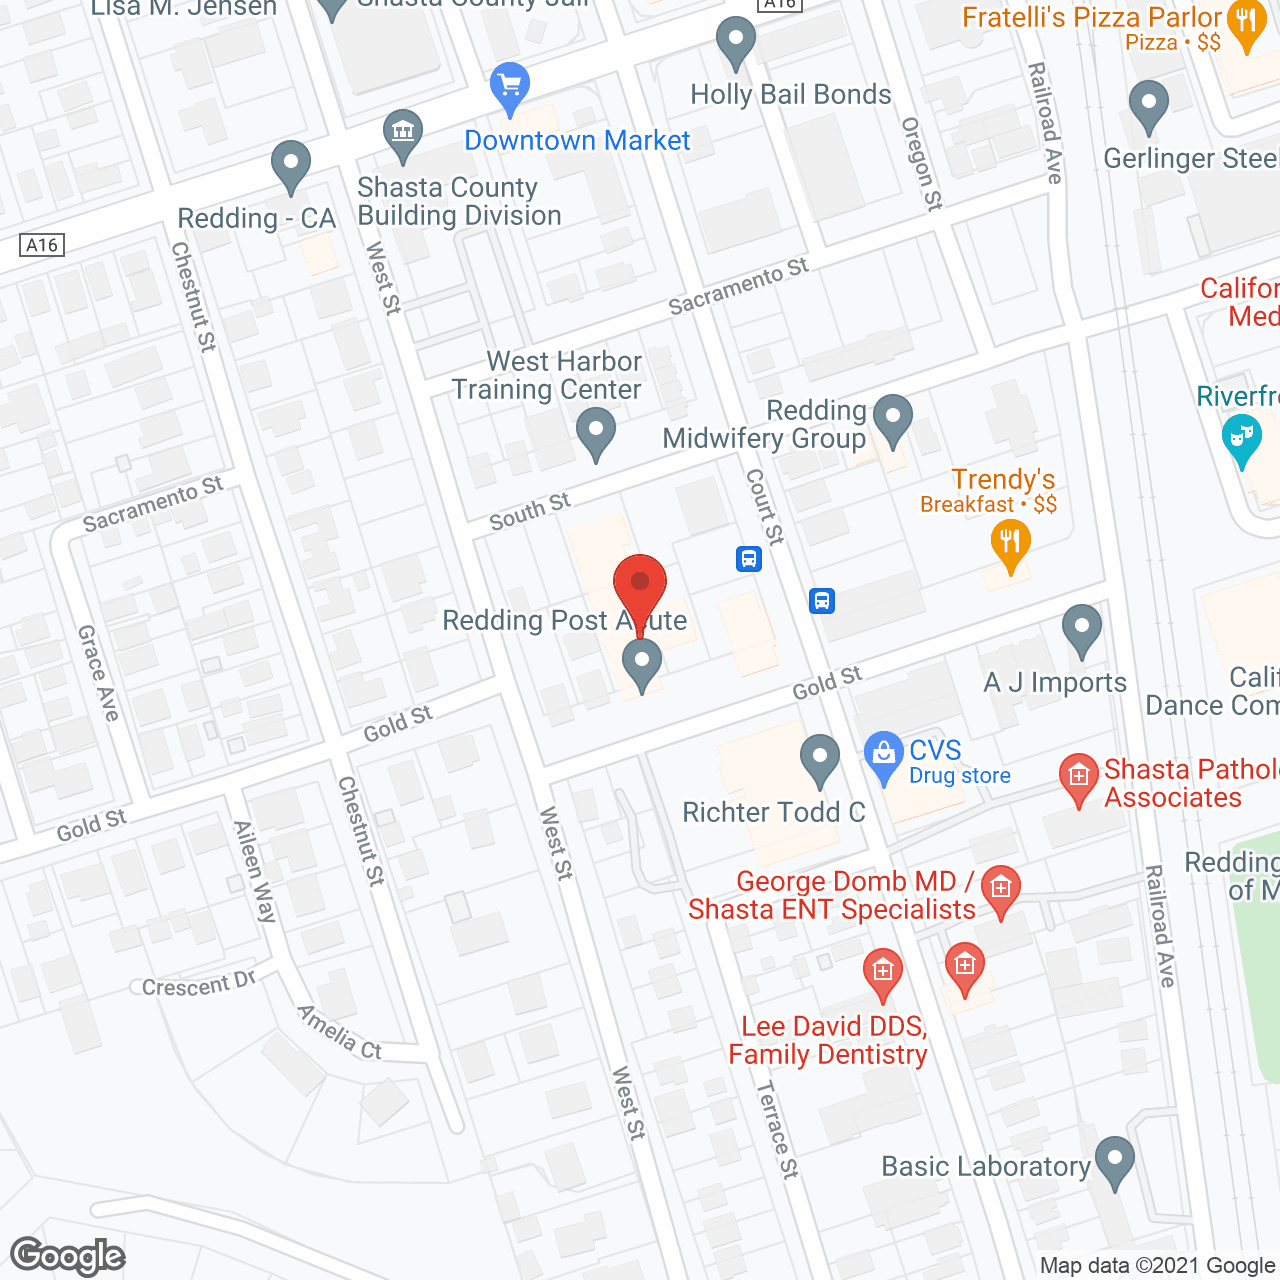 Golden LivingCenter - Redding in google map